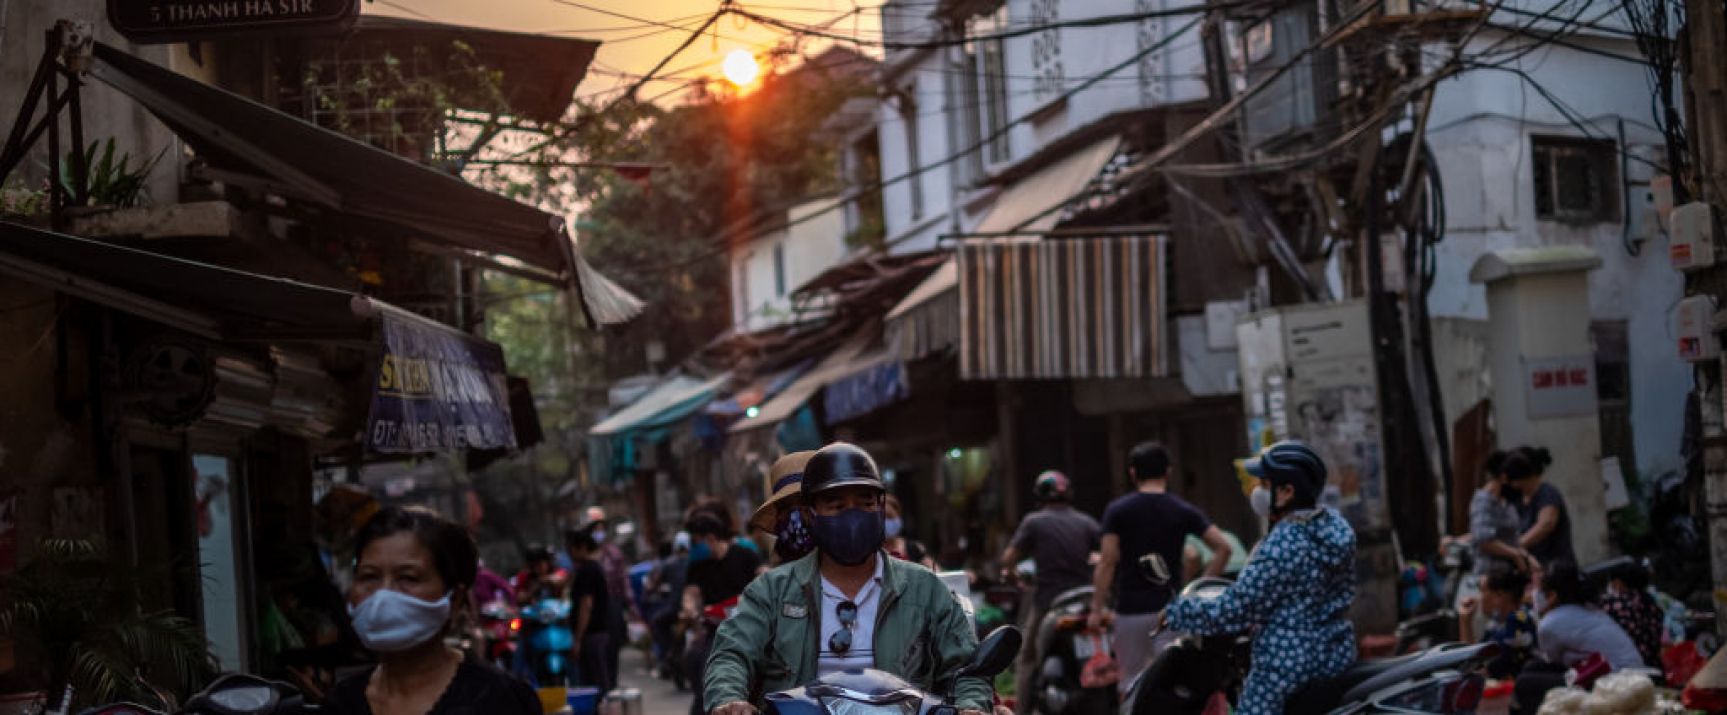 Wietnam się otwiera fot. Getty Images